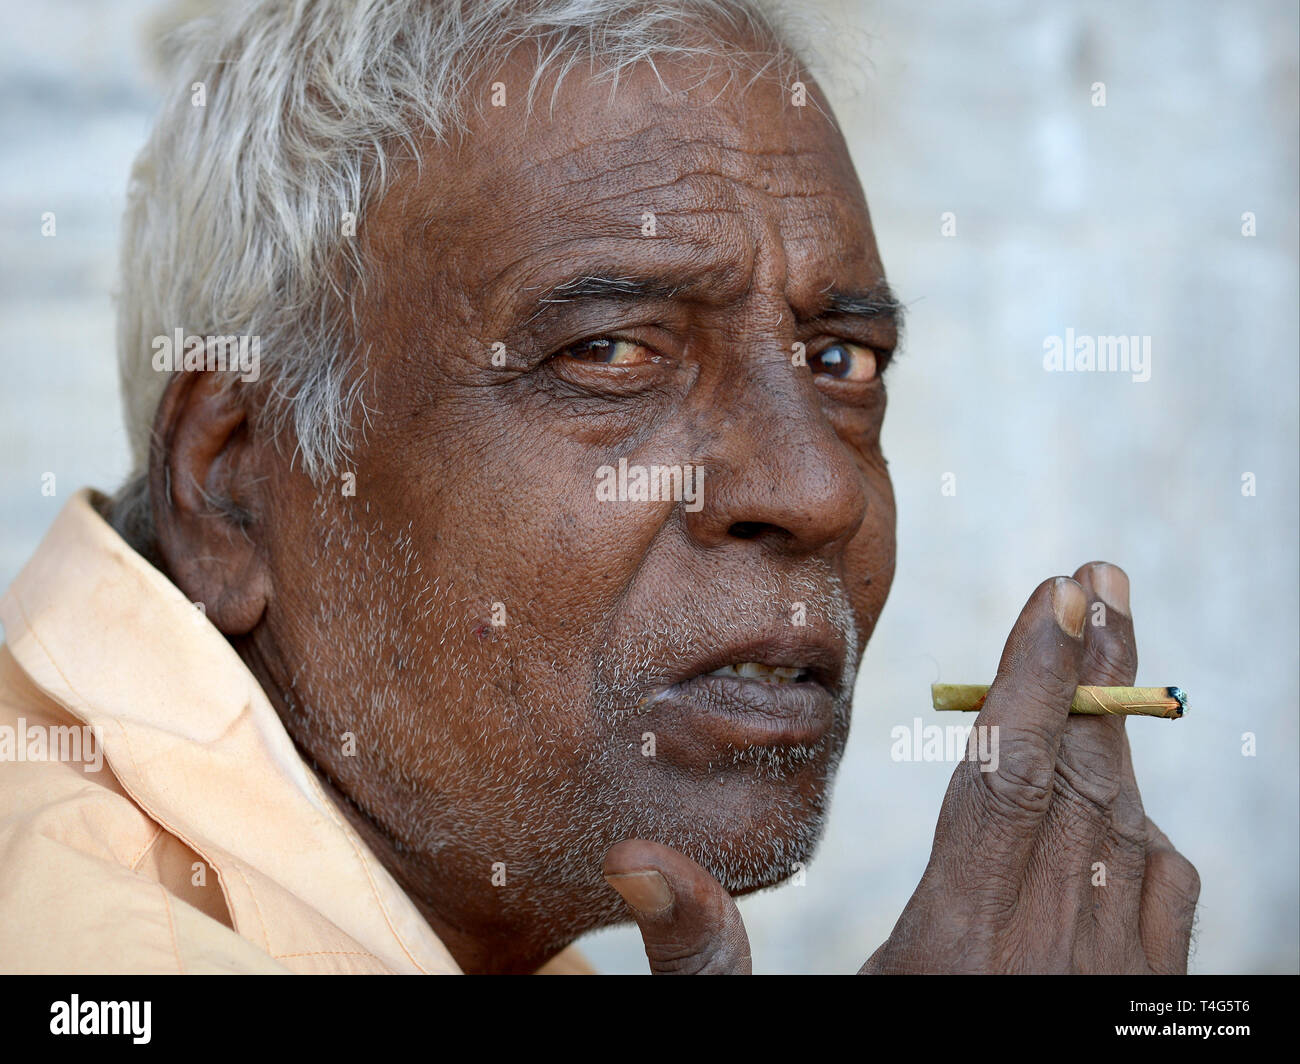 Anziani uomo indiano detiene una economici Indian mini-sigaro (beedi) nella mano destra e guarda la telecamera. Foto Stock